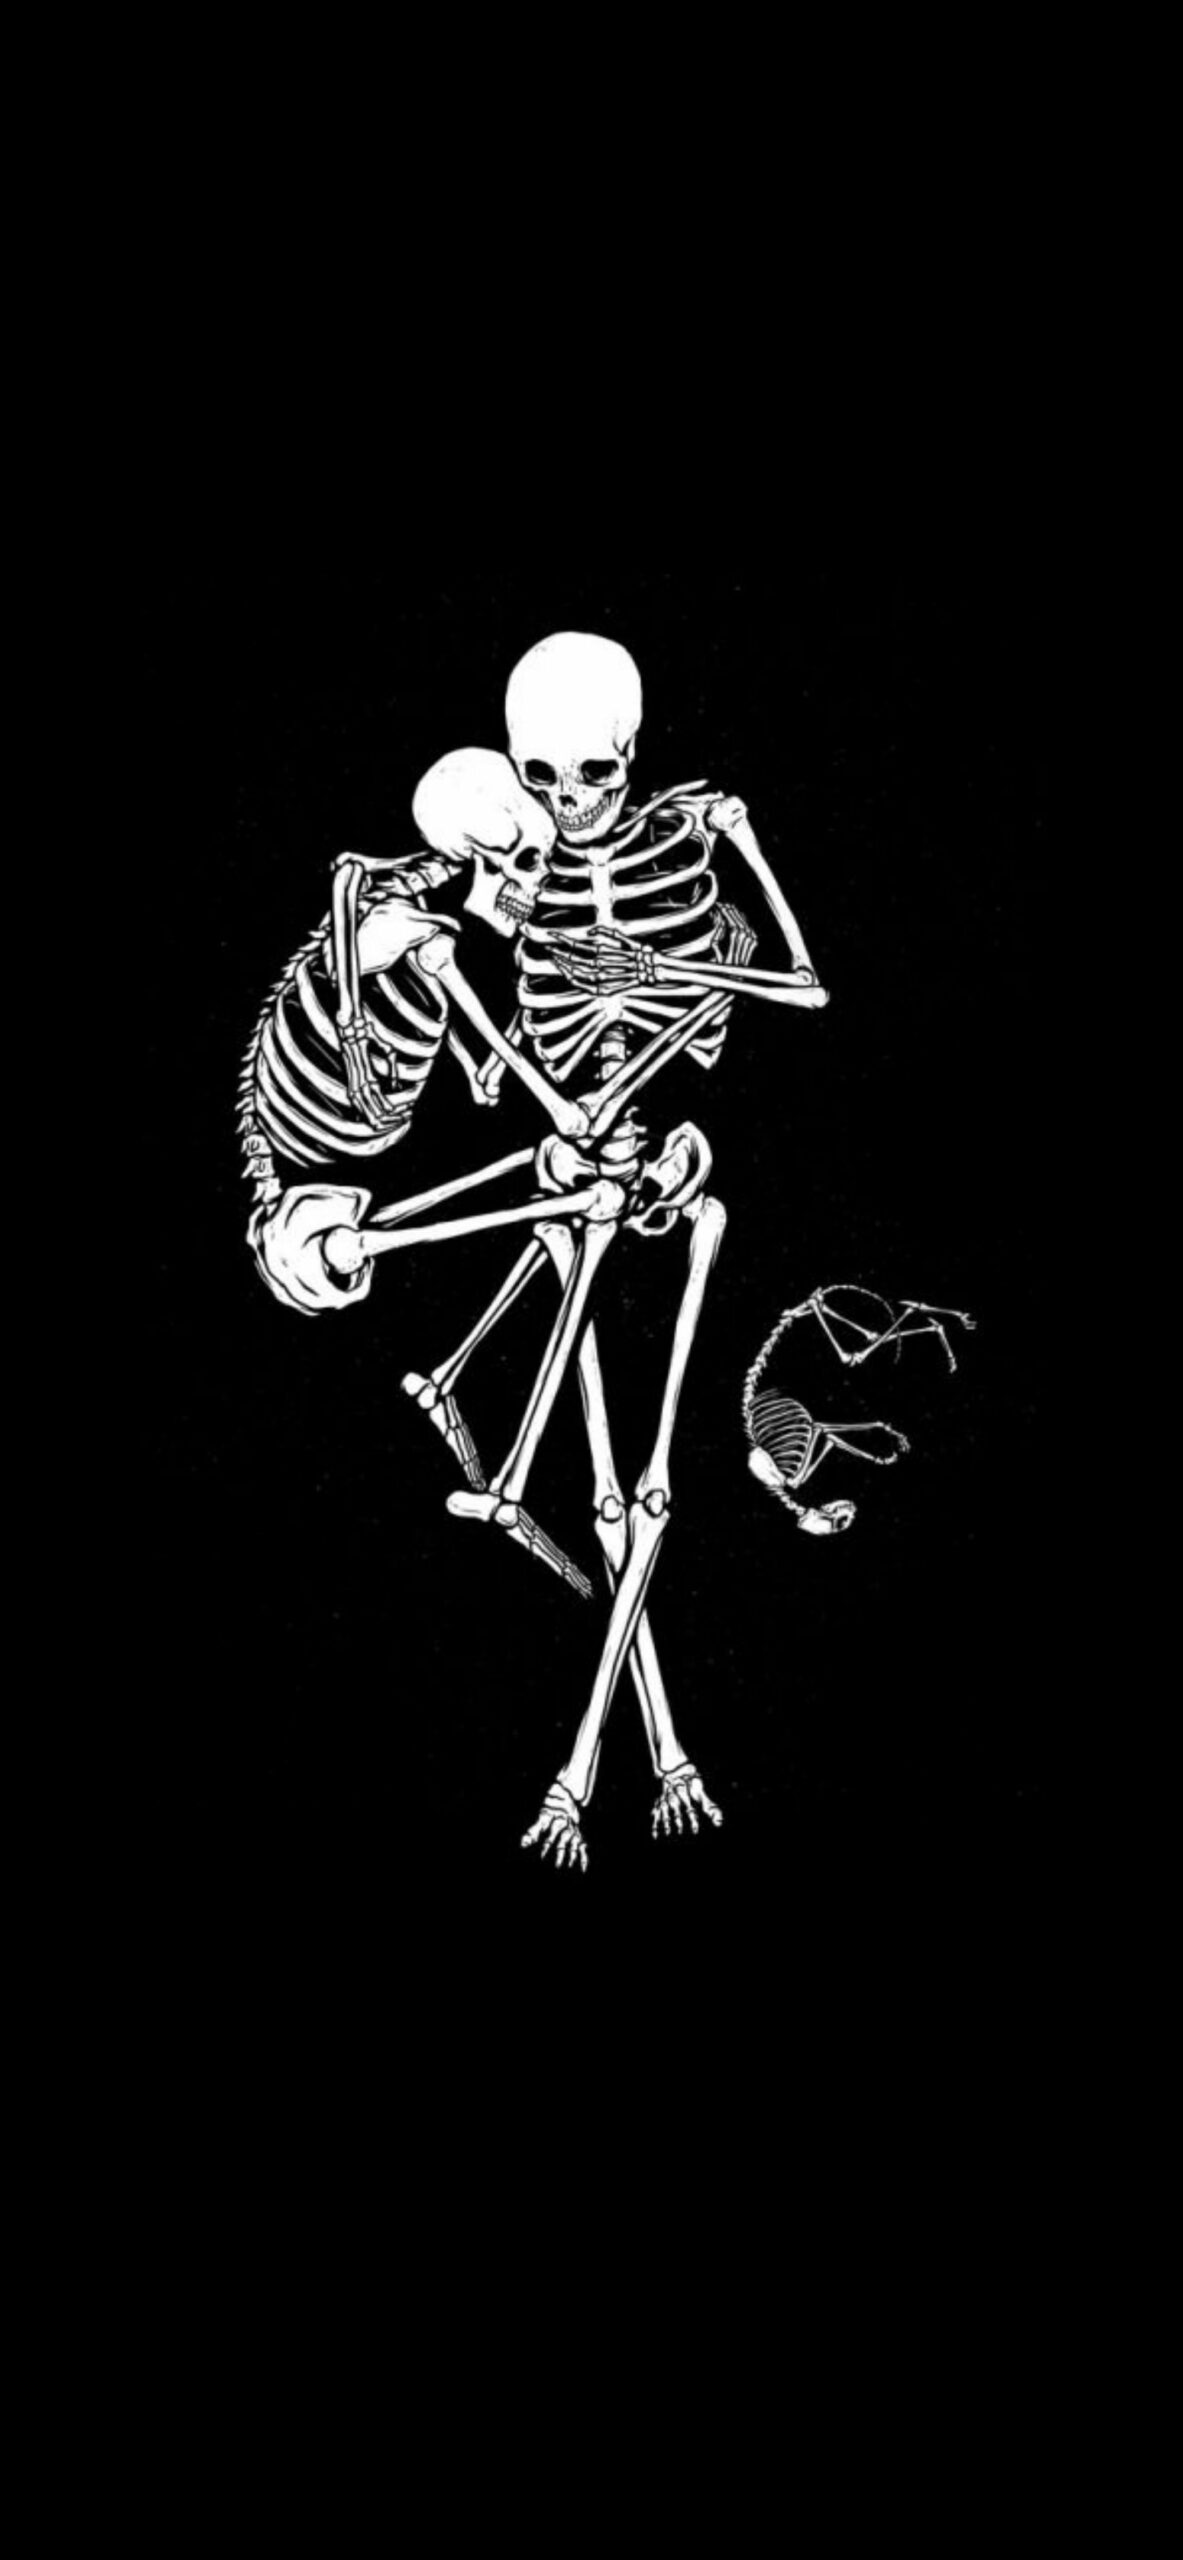 Skeletons Family Black Wallpapers - Skeleton Wallpaper for iPhone